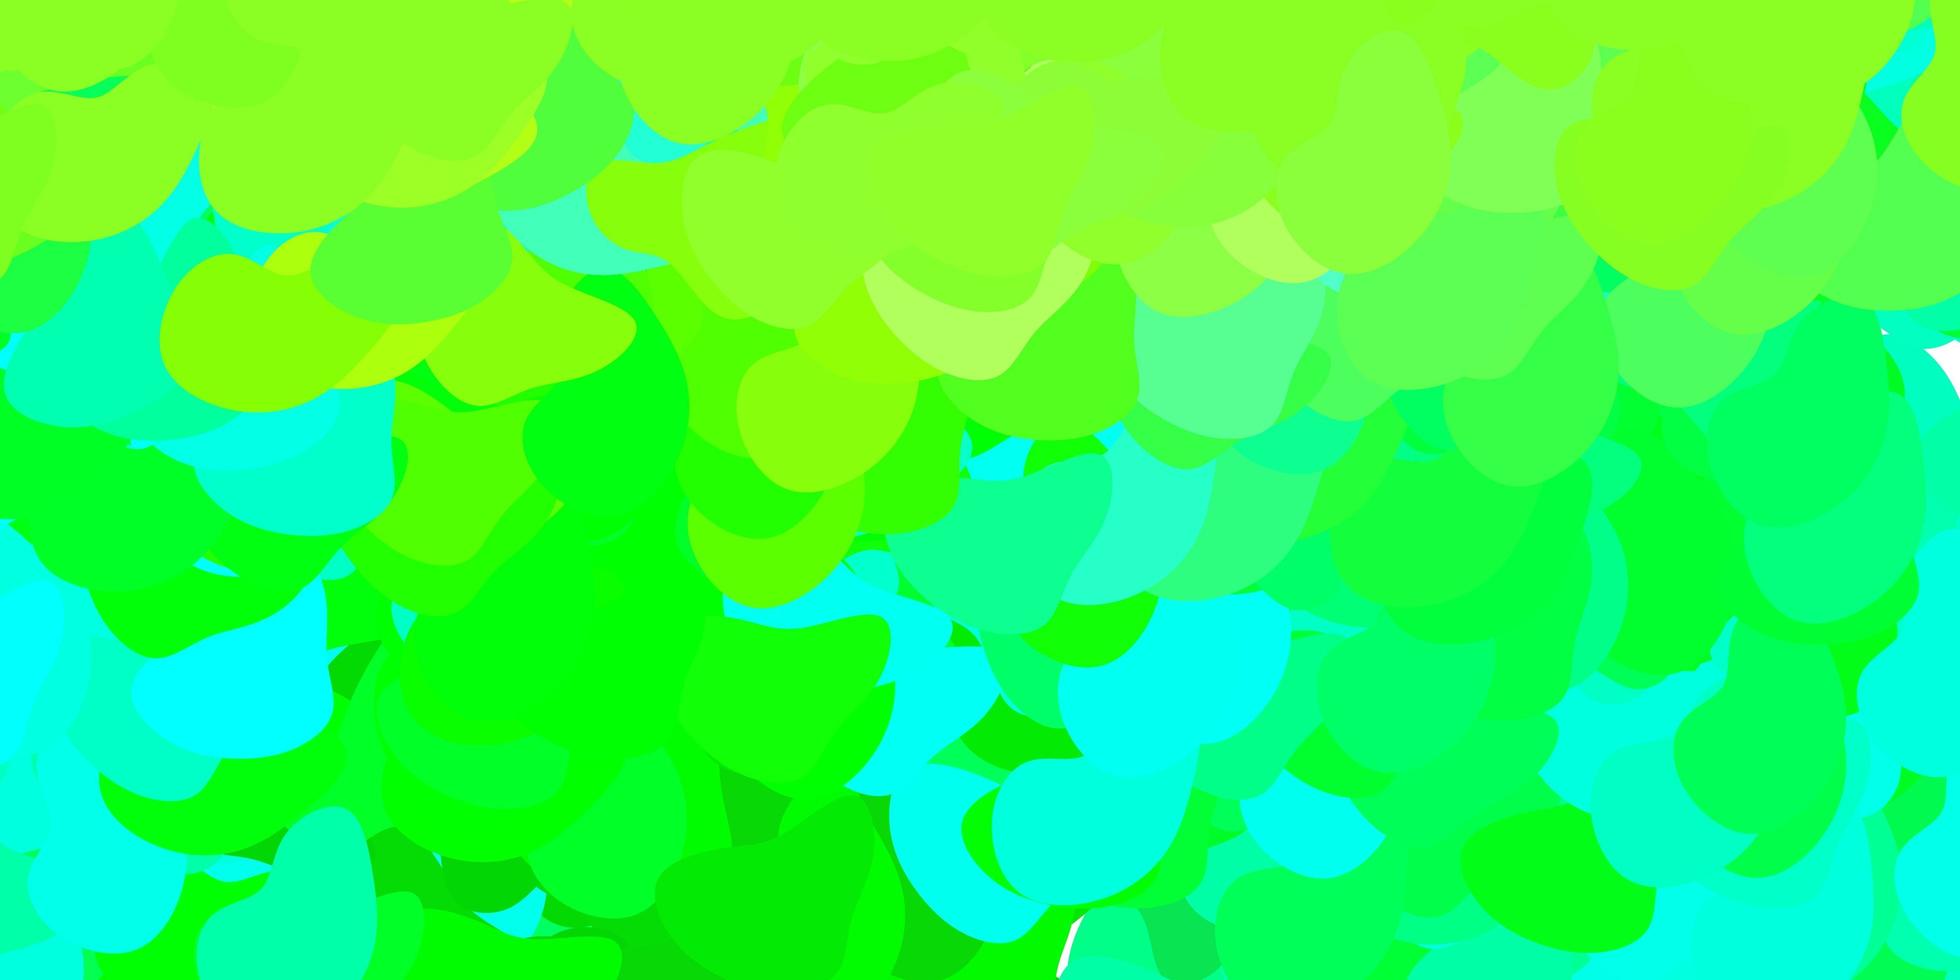 ljusblå, grön mall med abstrakta former. vektor